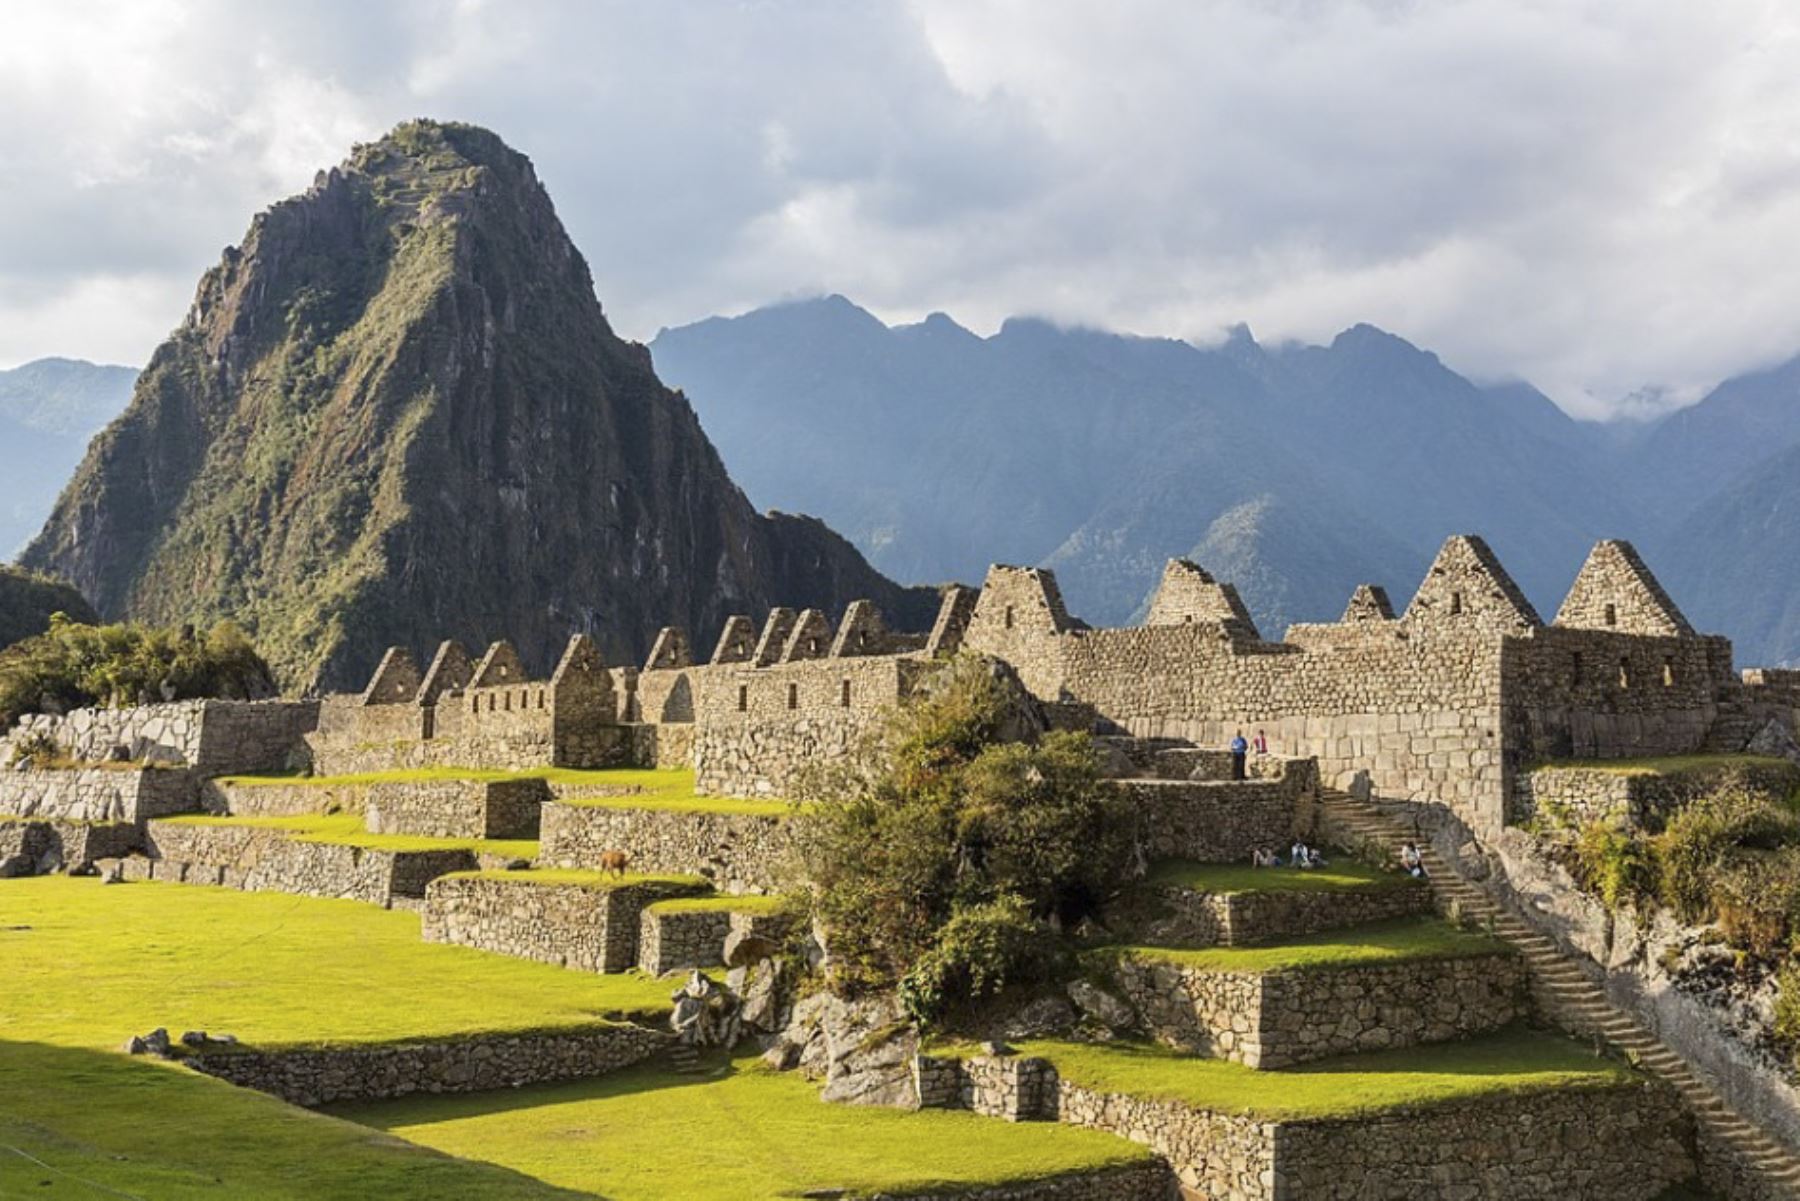 Todo se encuentra listo en Machu Picchu para recibir a los turistas a partir de noviembre, afirmó el ministro de Cultura, Alejandro Neyra. ANDINA/difusión